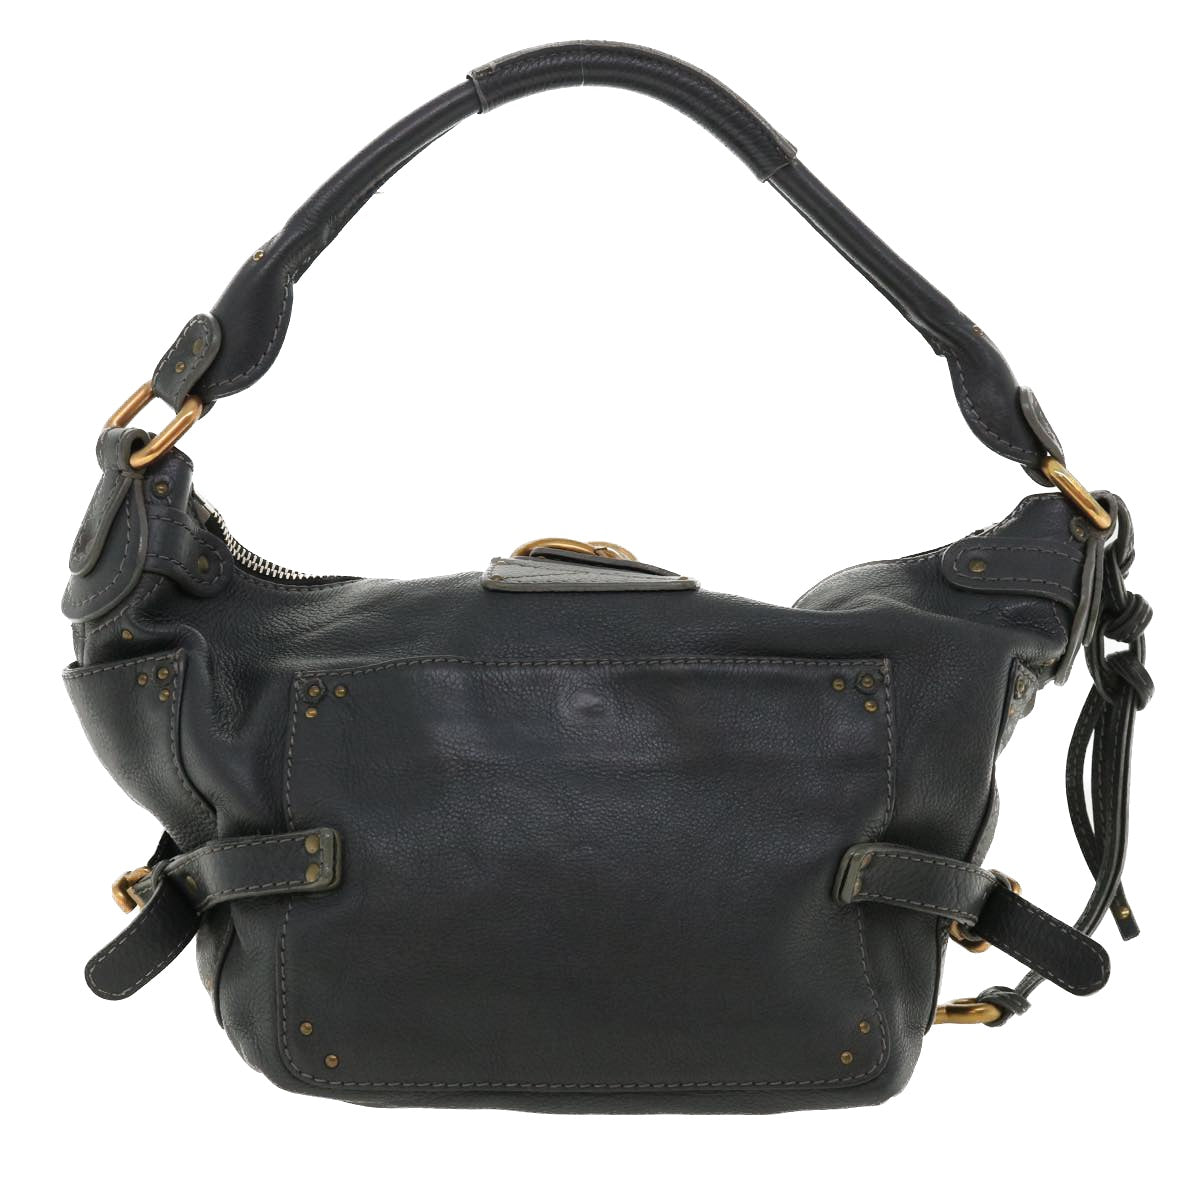 Chloe Paddington Hand Bag Leather Navy 01-06-53 Auth 36559 - 0